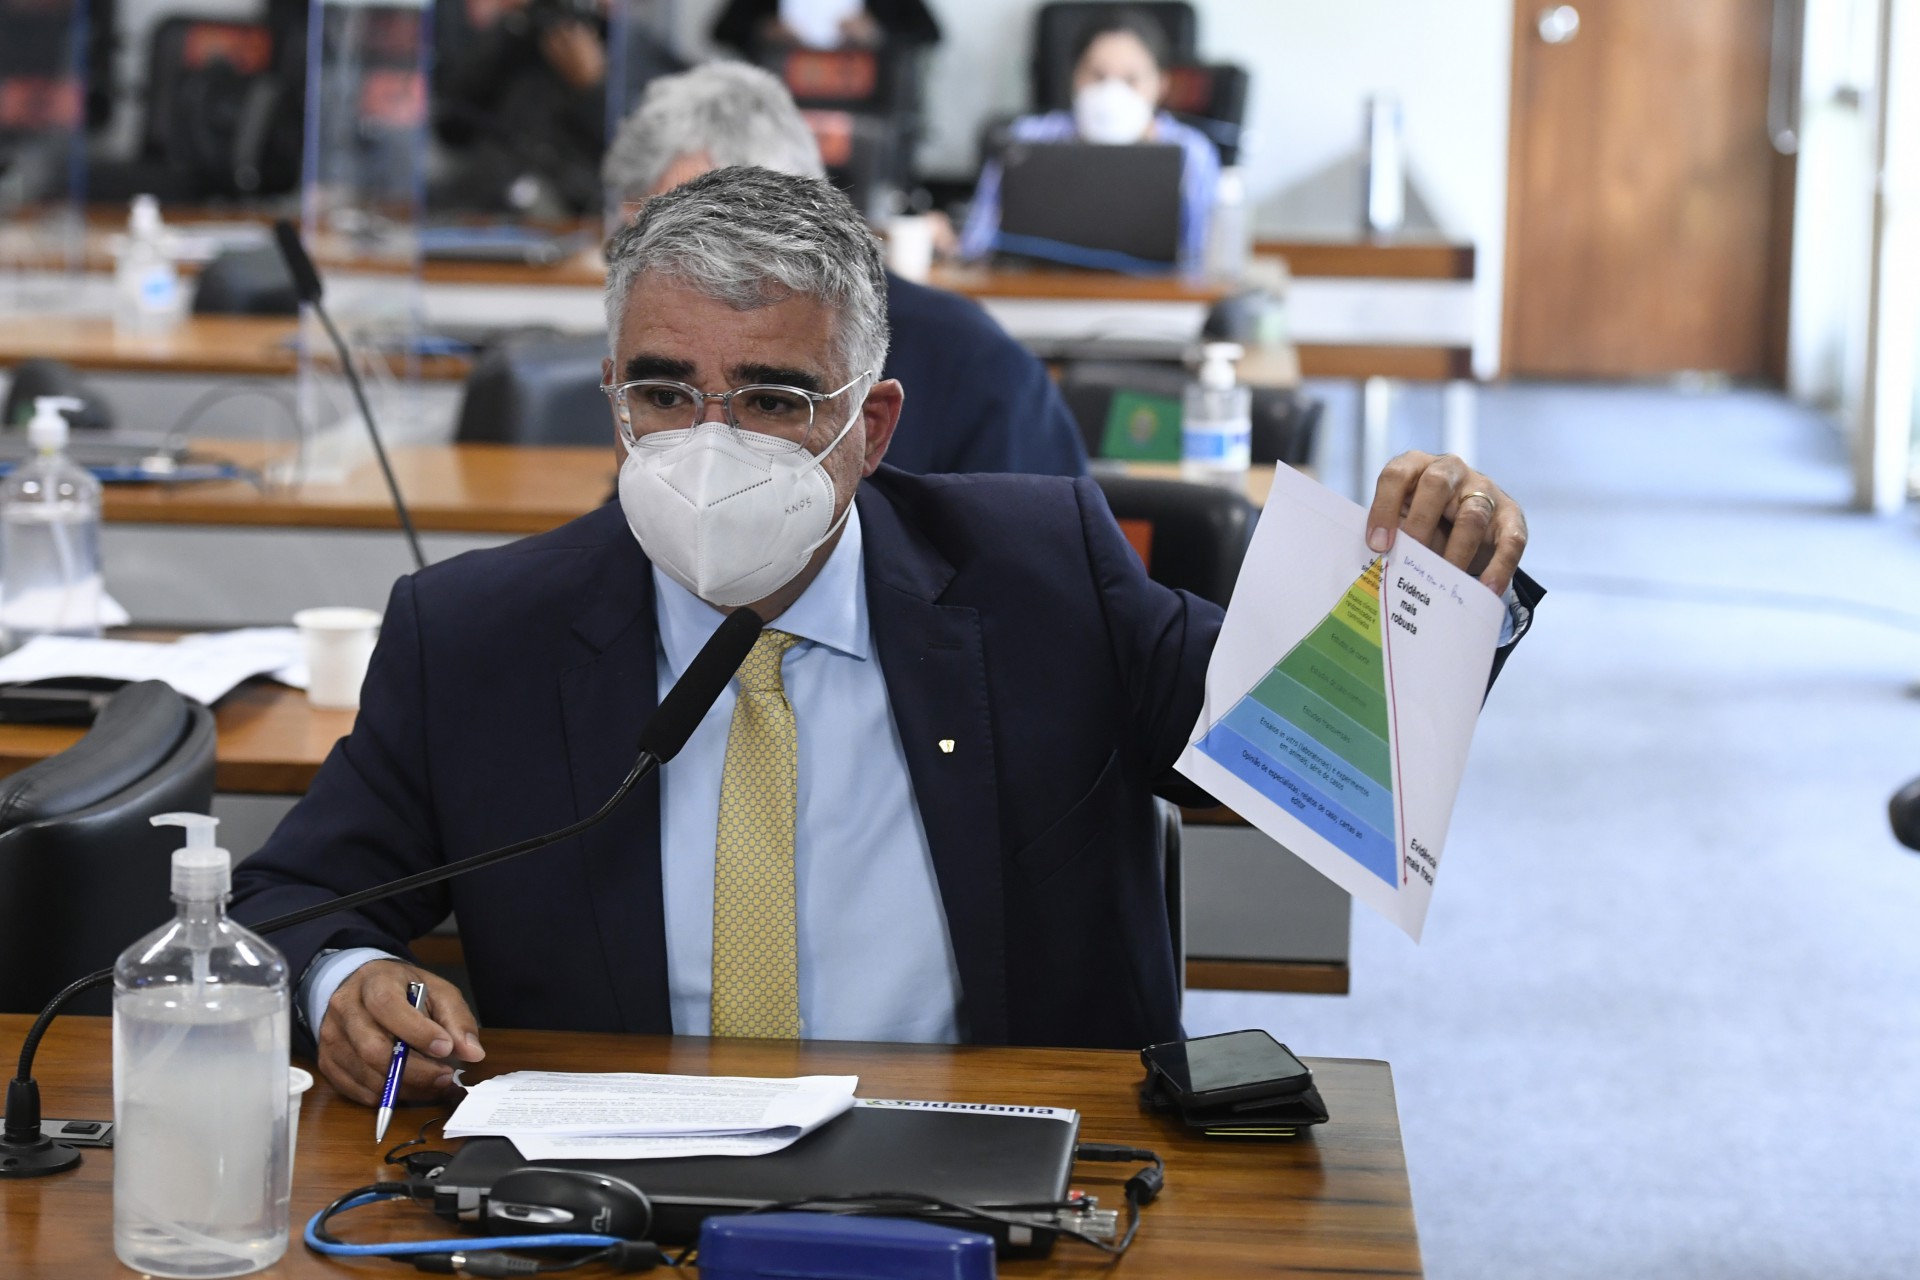 ￼Senador Eduardo Girão promete apresentar relatório paralelo ao da CPI da Covid (Foto: Jefferson Rudy/Agência Senado)